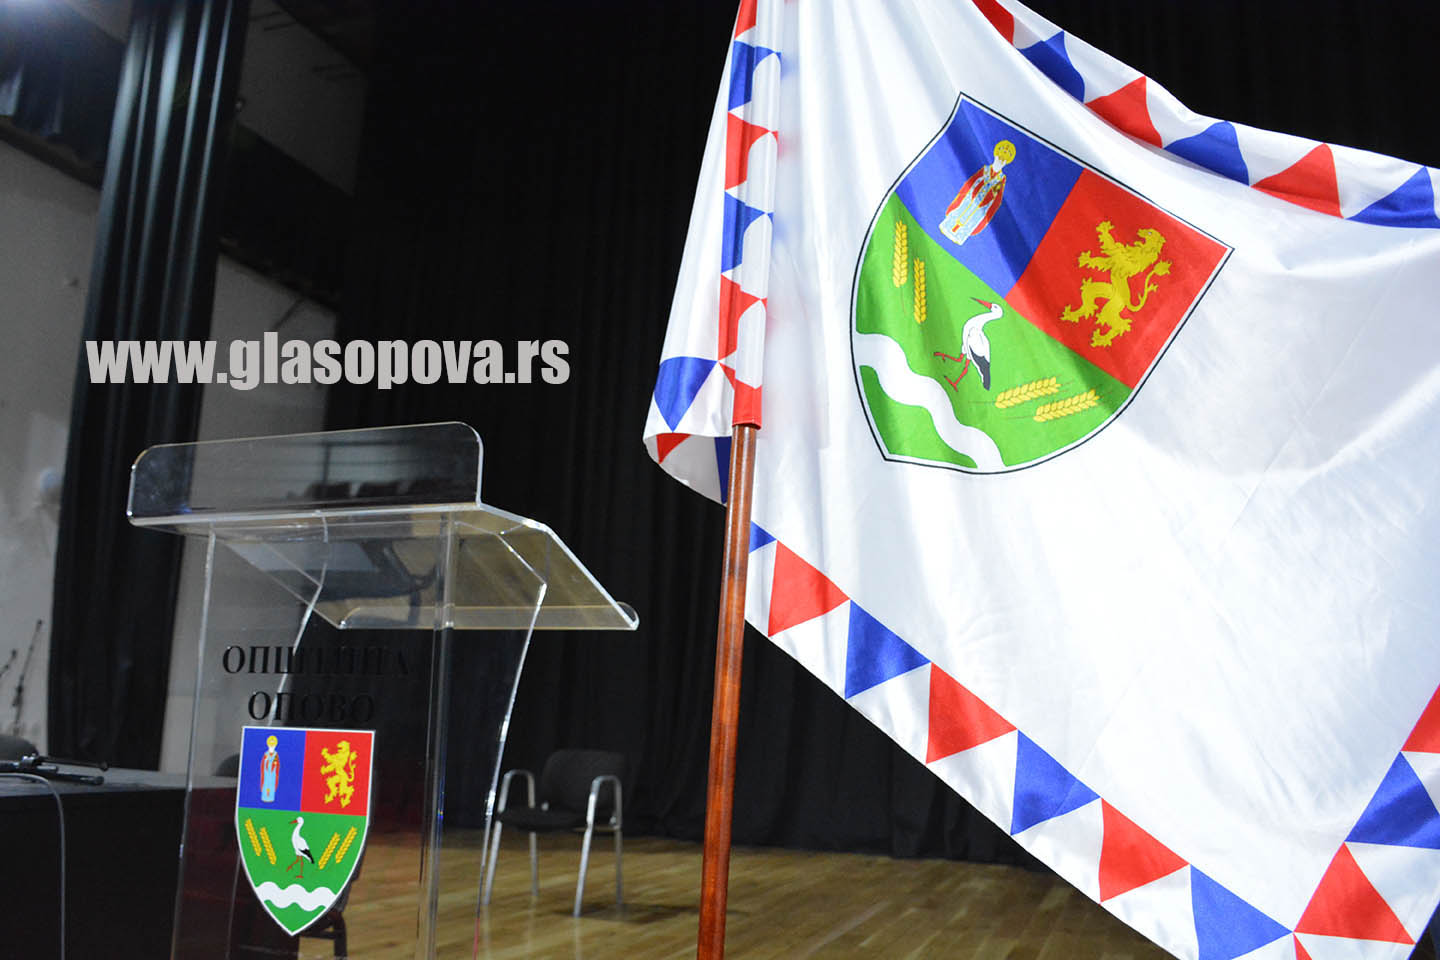 Skupština opštine Opovo: U ponedeljak 29. sednica lokalnog parlamenta